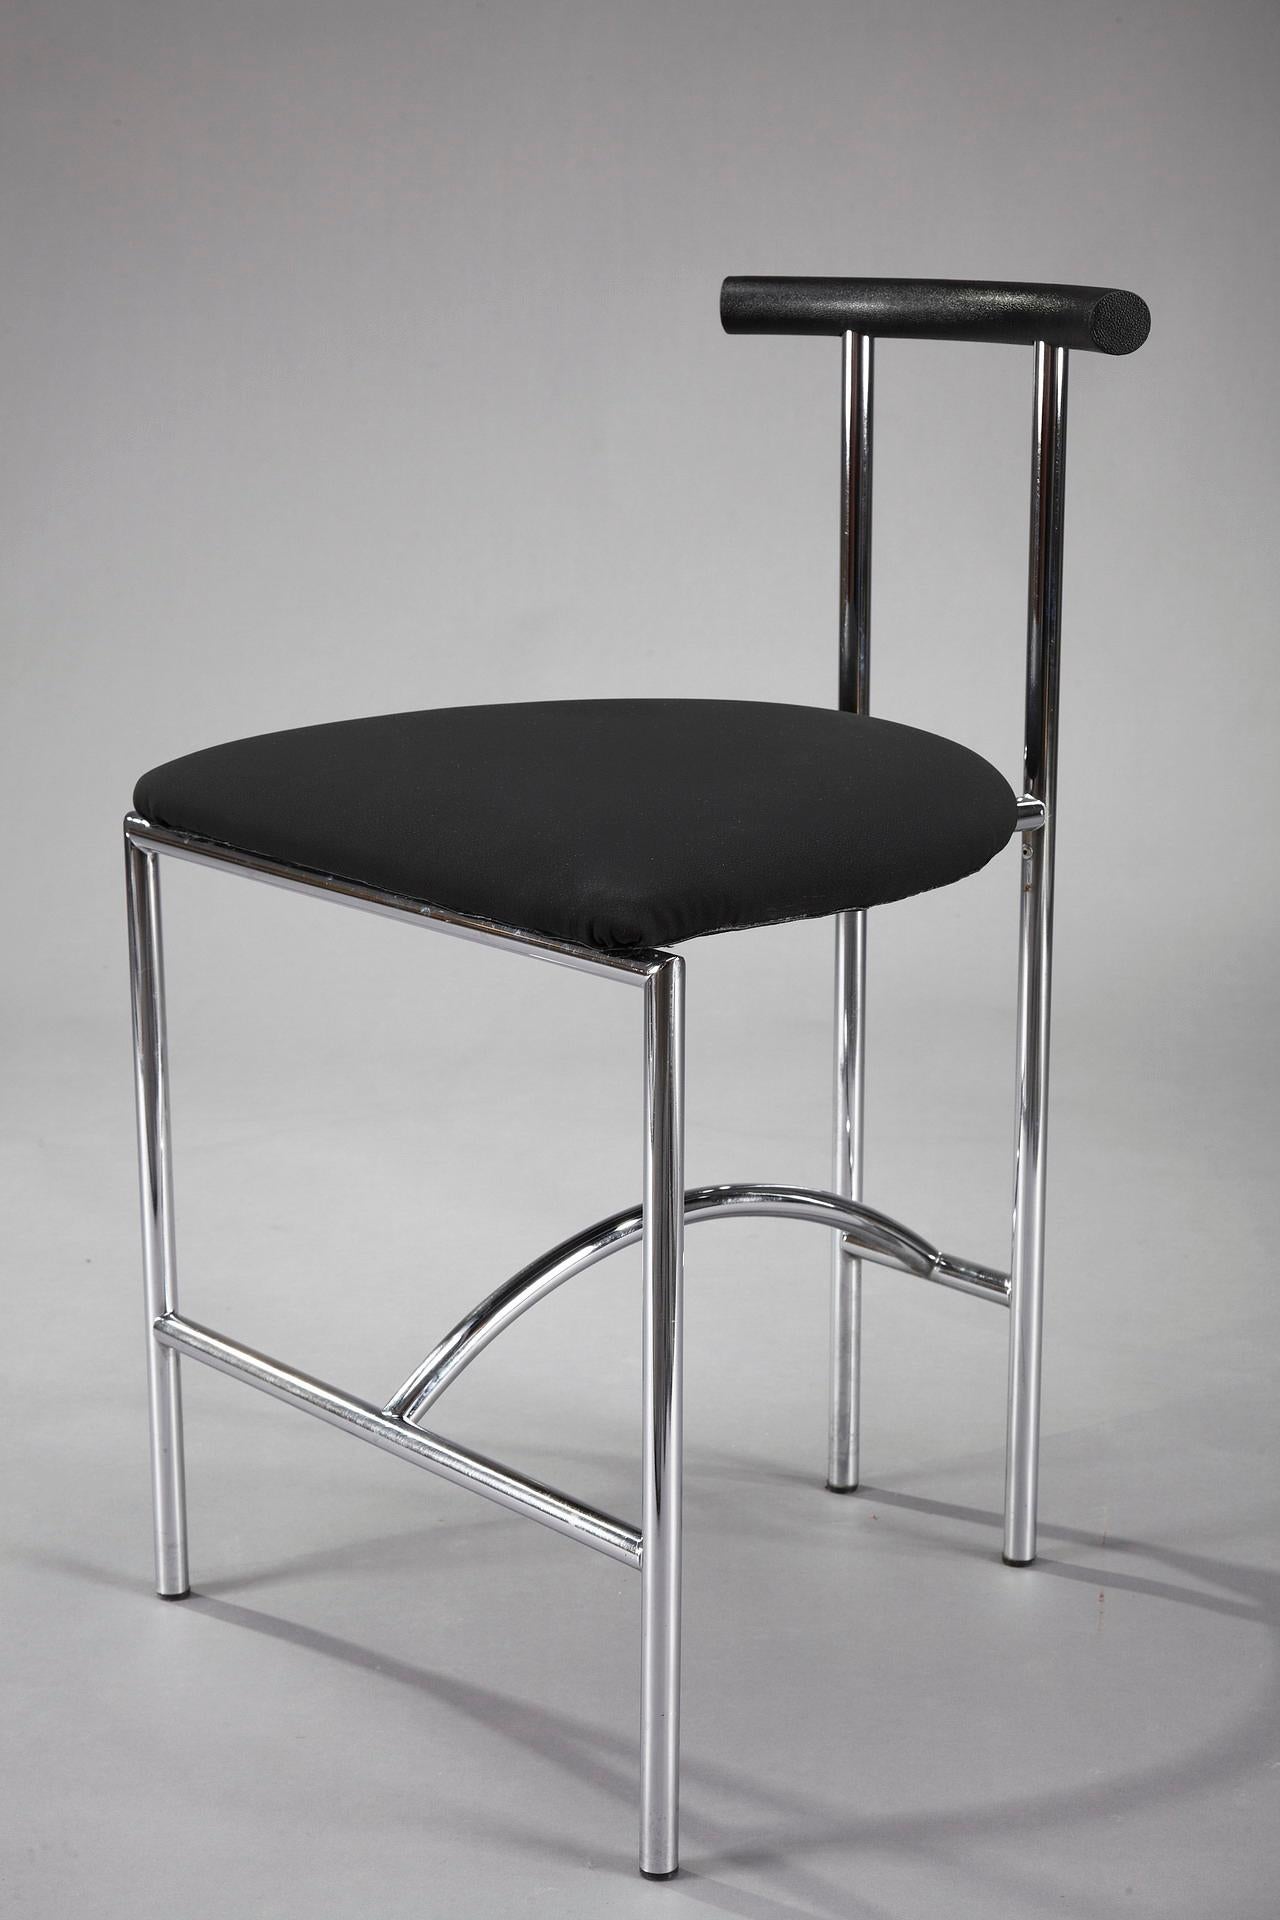 3 Bieffeplast Tokyo Chairs by Rodney Kinsman 2